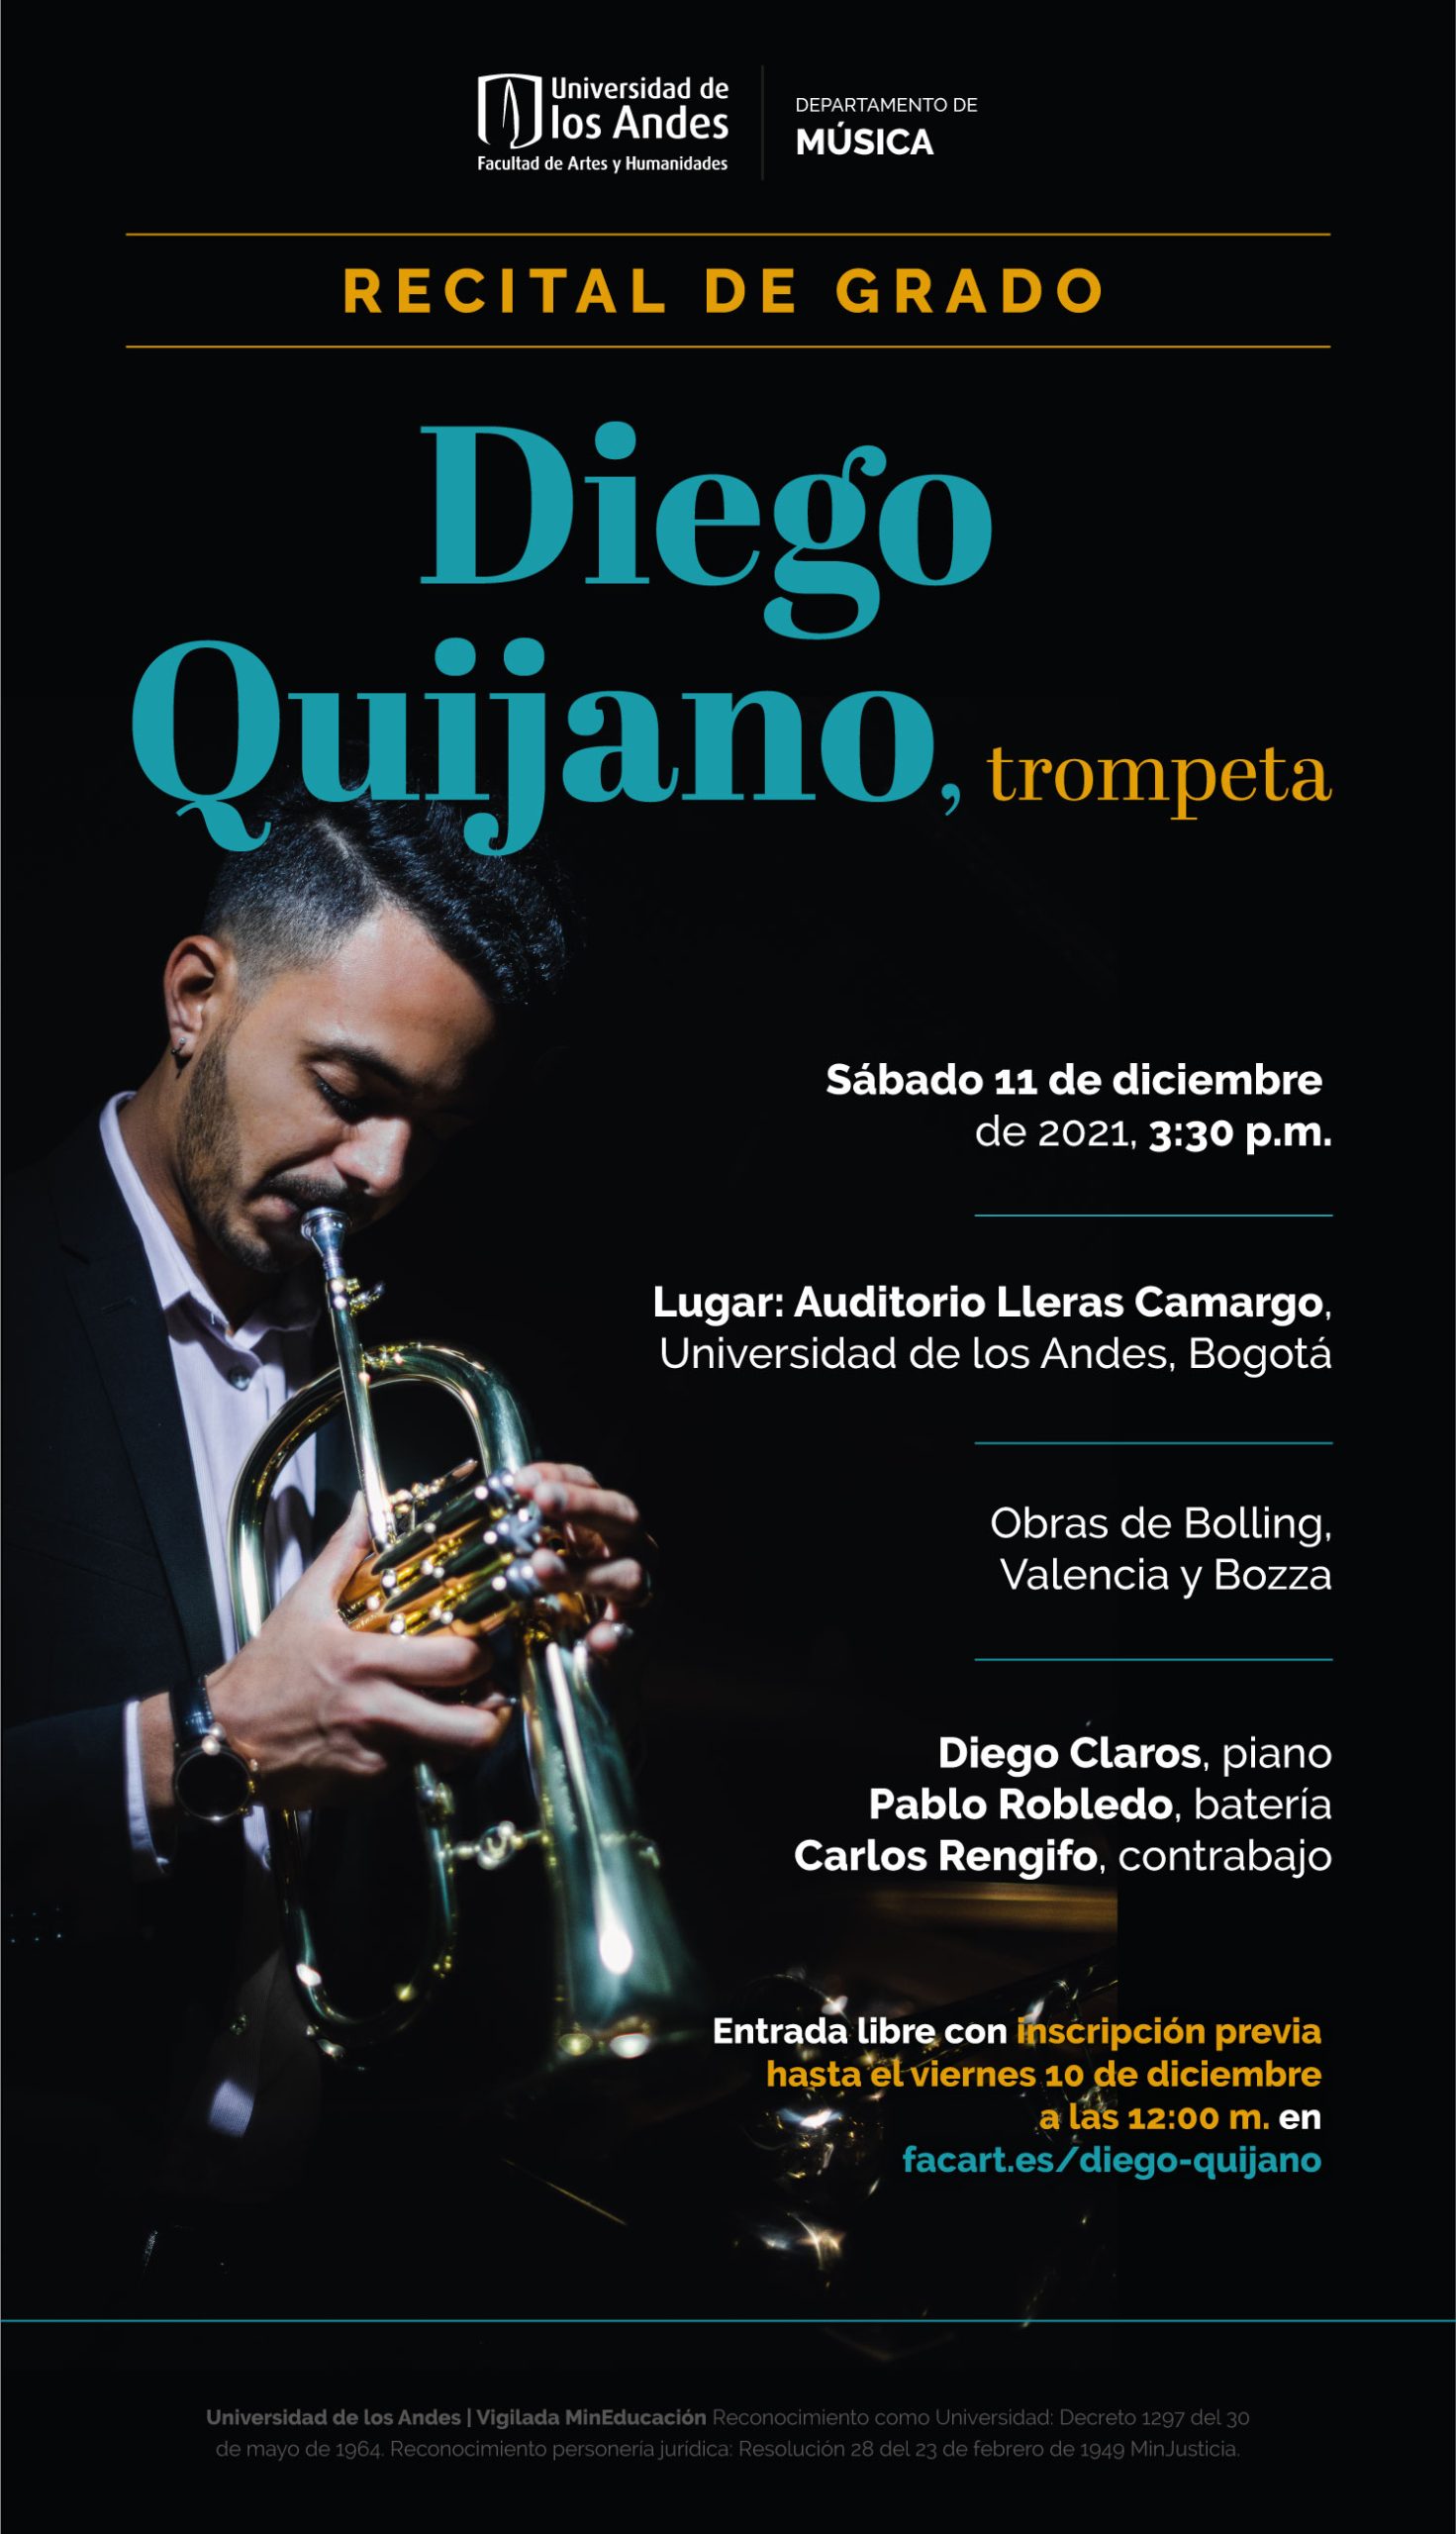 Recital de grado: Diego Quijano, trompeta